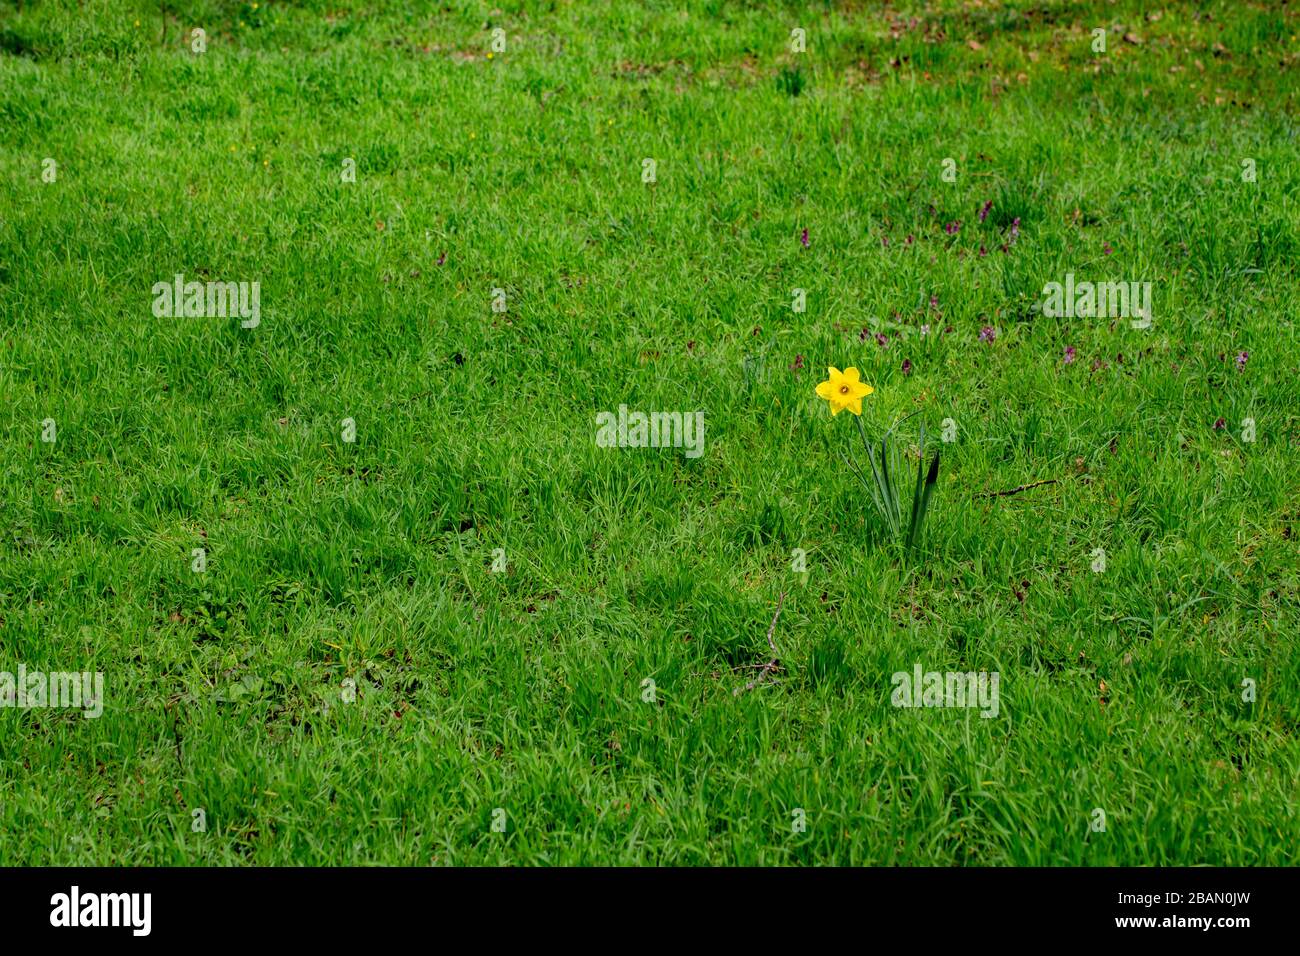 Jonarcisse simple debout seul entouré d'herbe, également appelé Narcisse pseudonarcisse Banque D'Images